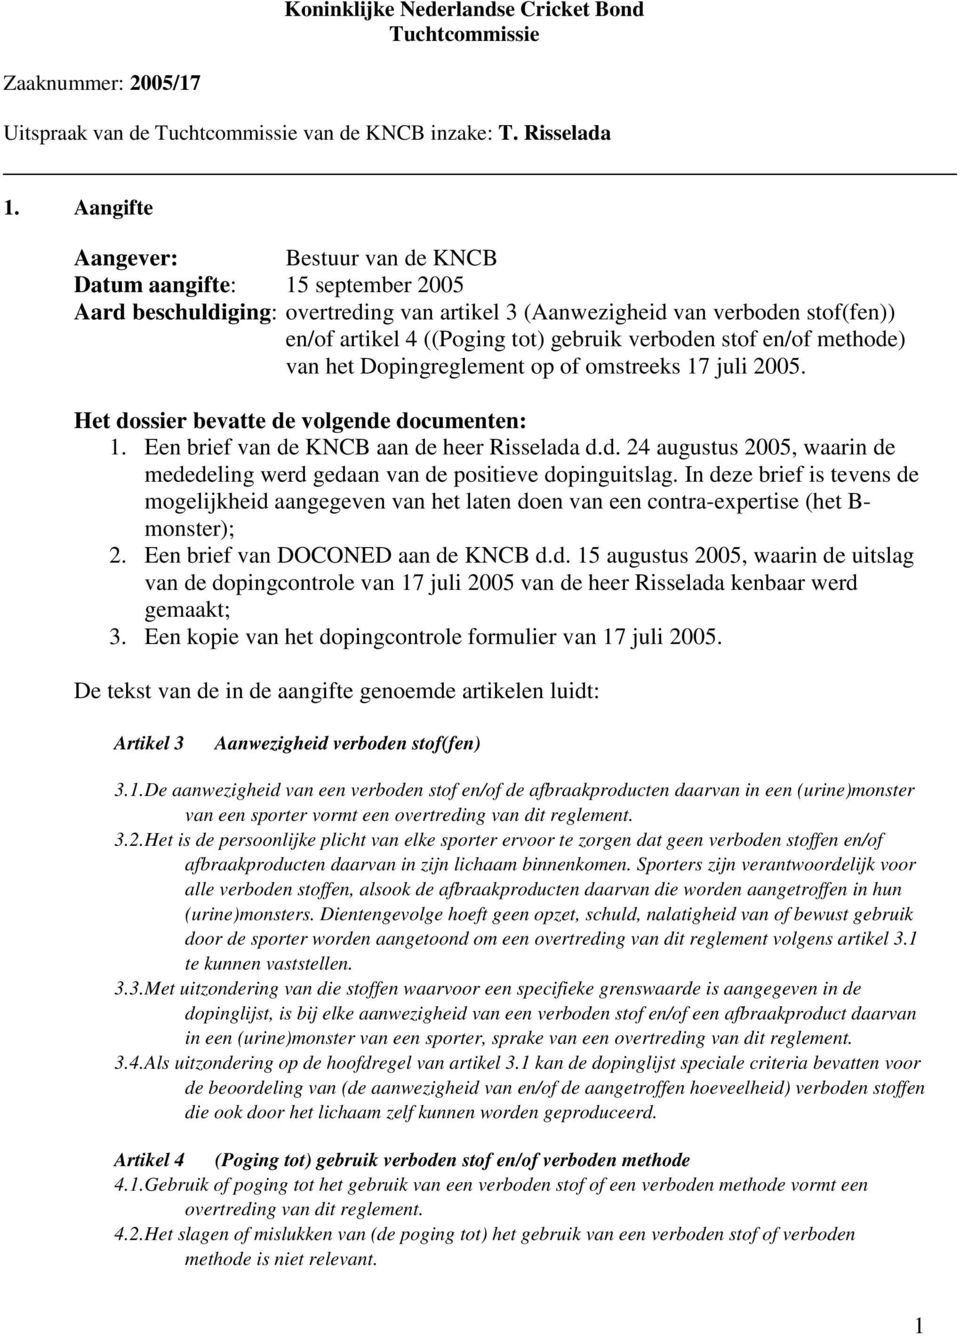 verboden stof en/of methode) van het Dopingreglement op of omstreeks 17 juli 2005. Het dossier bevatte de volgende documenten: 1. Een brief van de KNCB aan de heer Risselada d.d. 24 augustus 2005, waarin de mededeling werd gedaan van de positieve dopinguitslag.